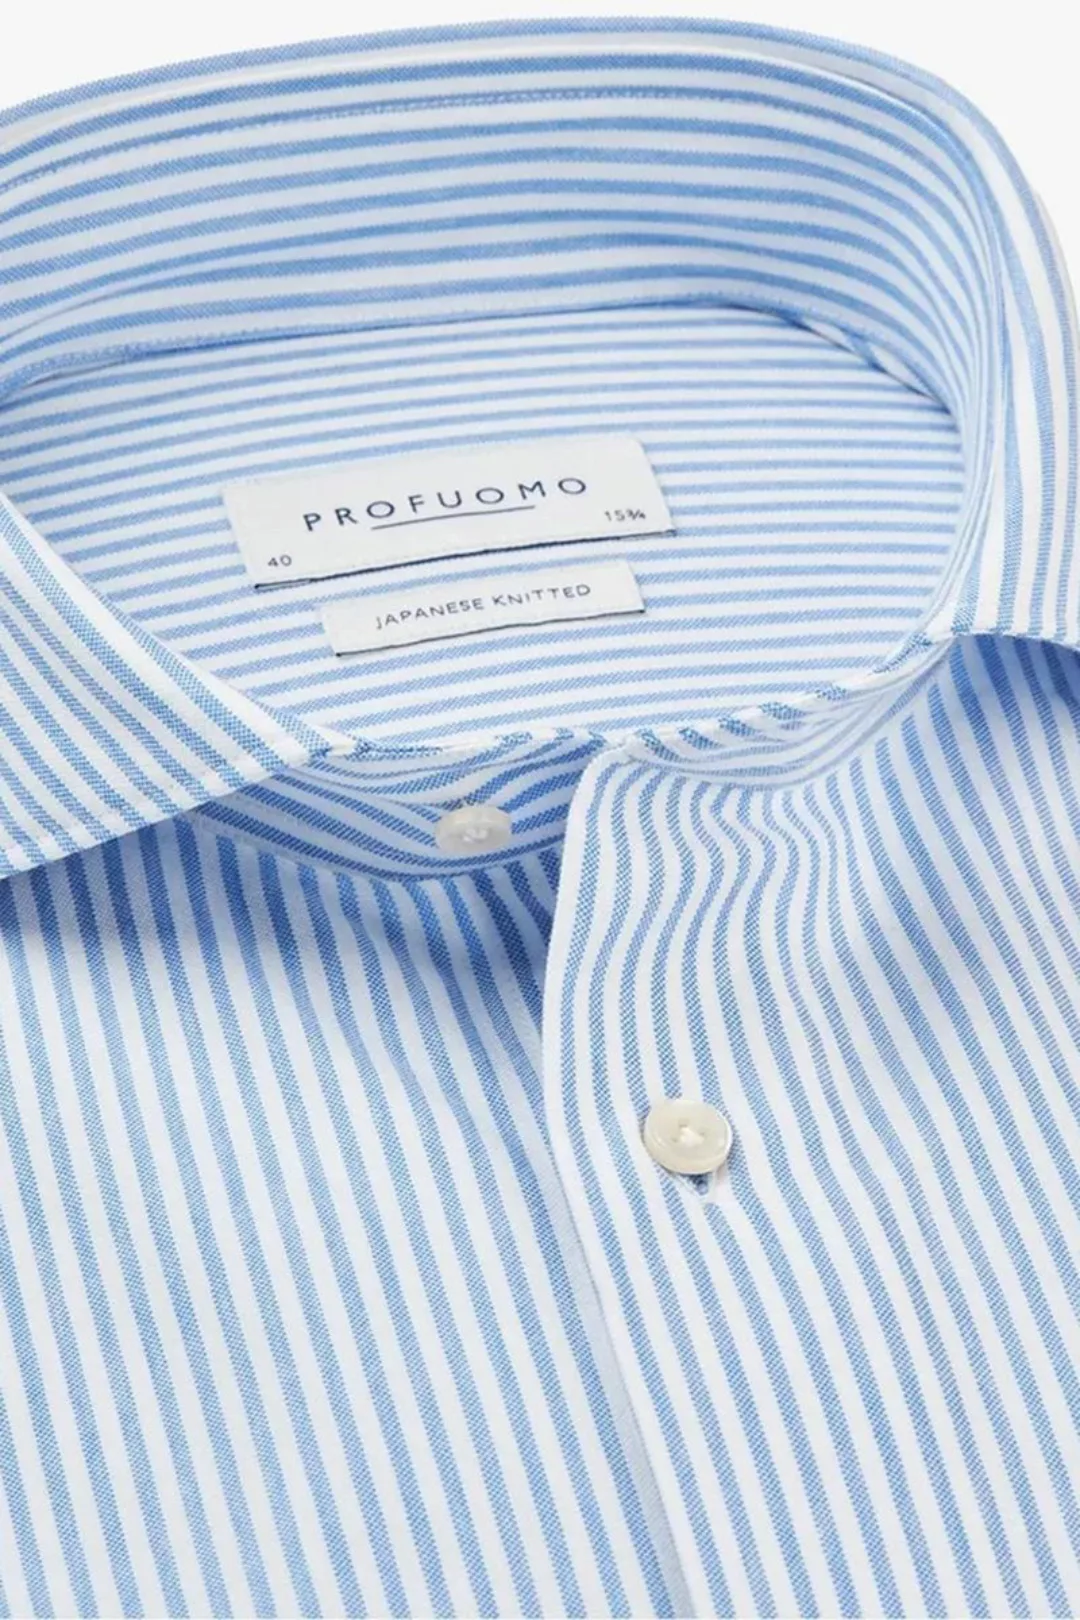 Profuomo Hemd Japanese Knitted Blau Streifen - Größe 42 günstig online kaufen